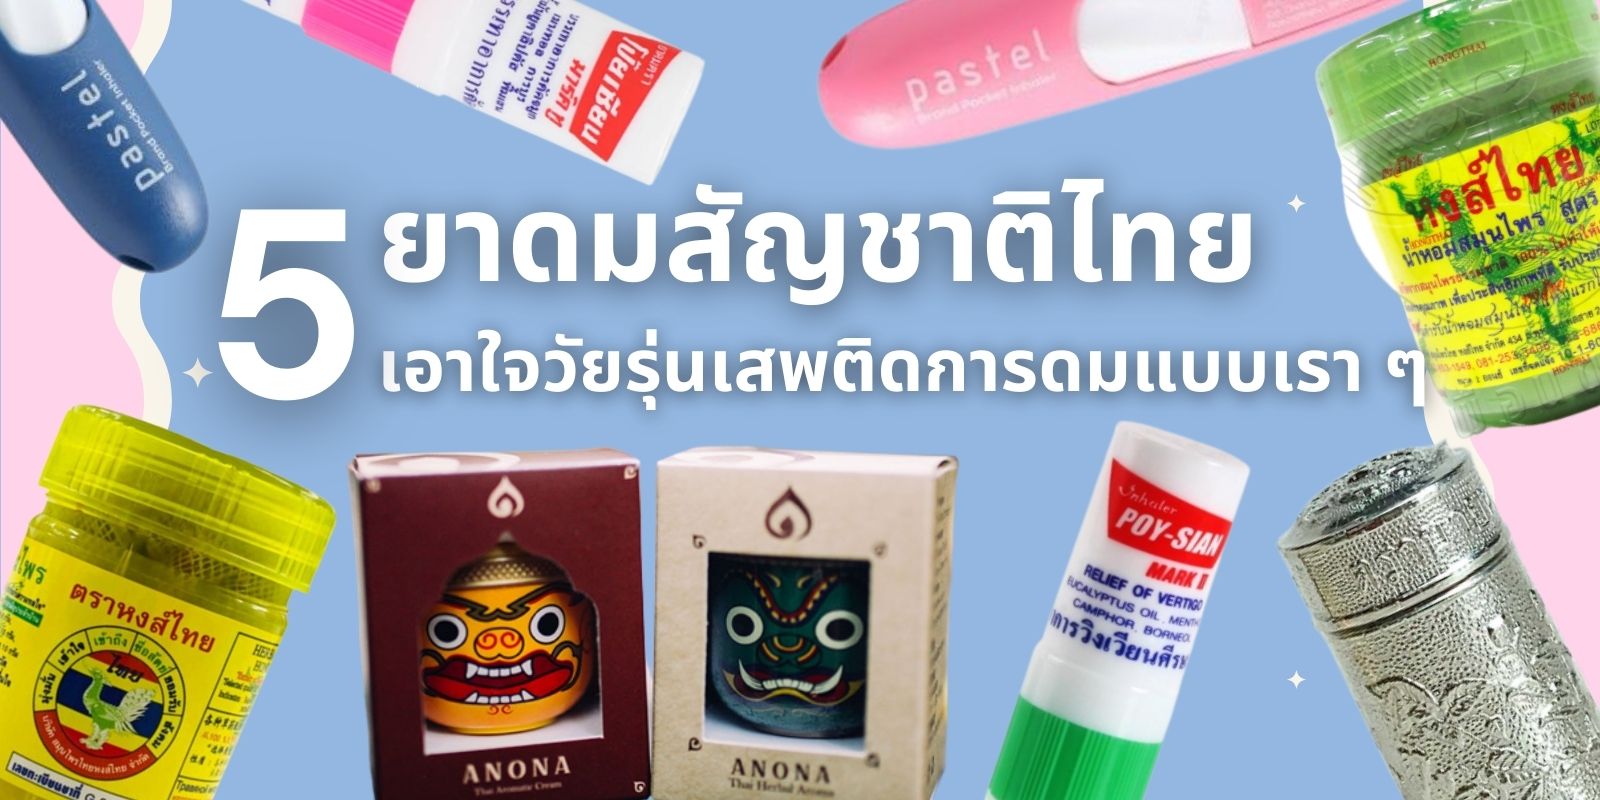 5 ยาดมสัญชาติไทย เอาใจวัยรุ่นเสพติดการดมแบบเรา ๆ